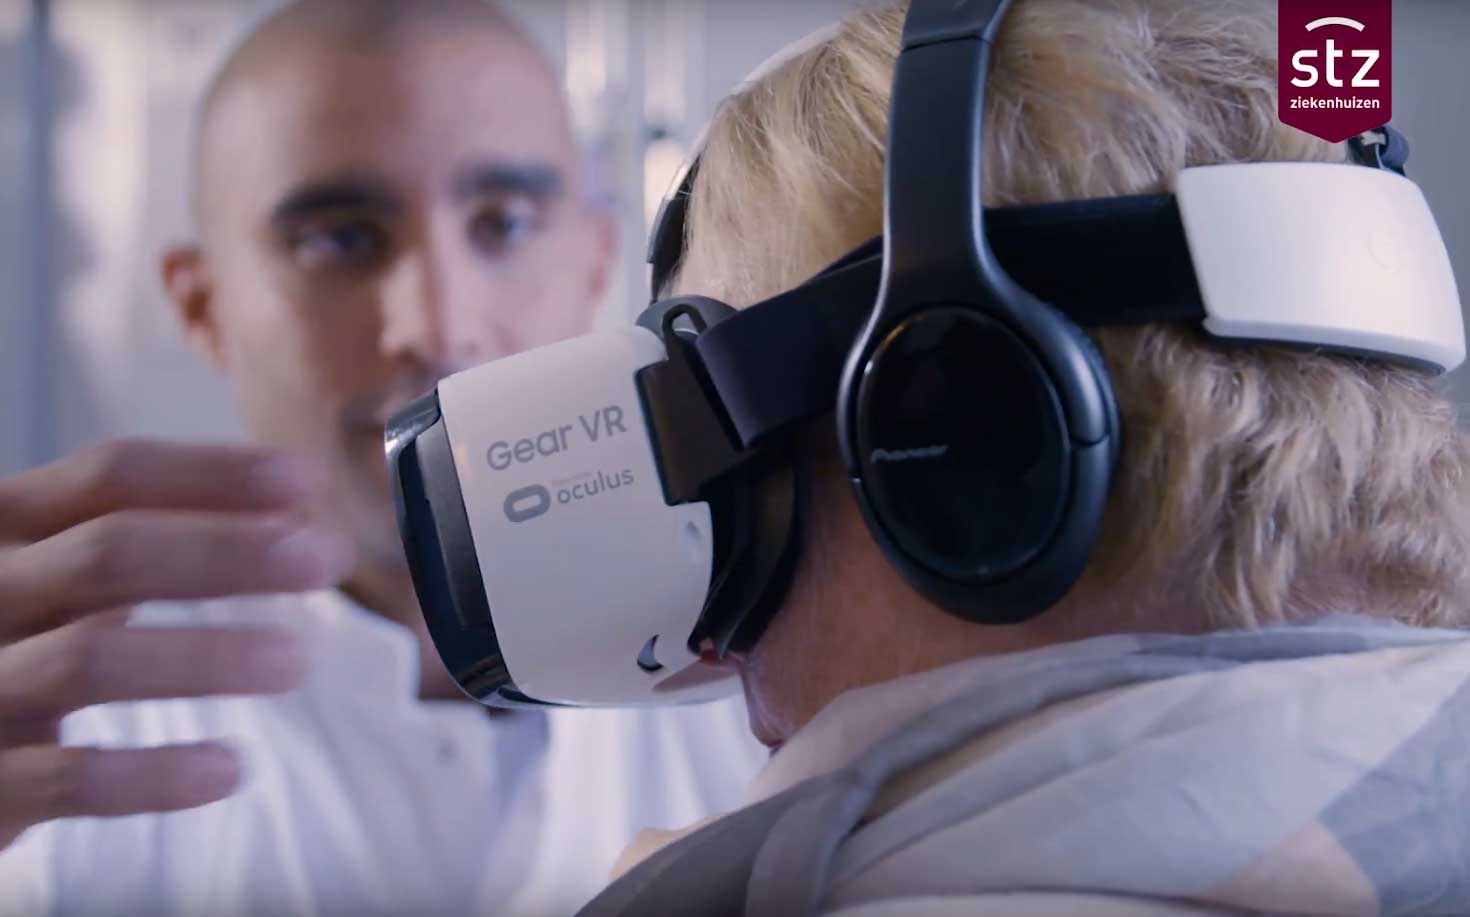 Proef met virtual reality voor ic-patiënt